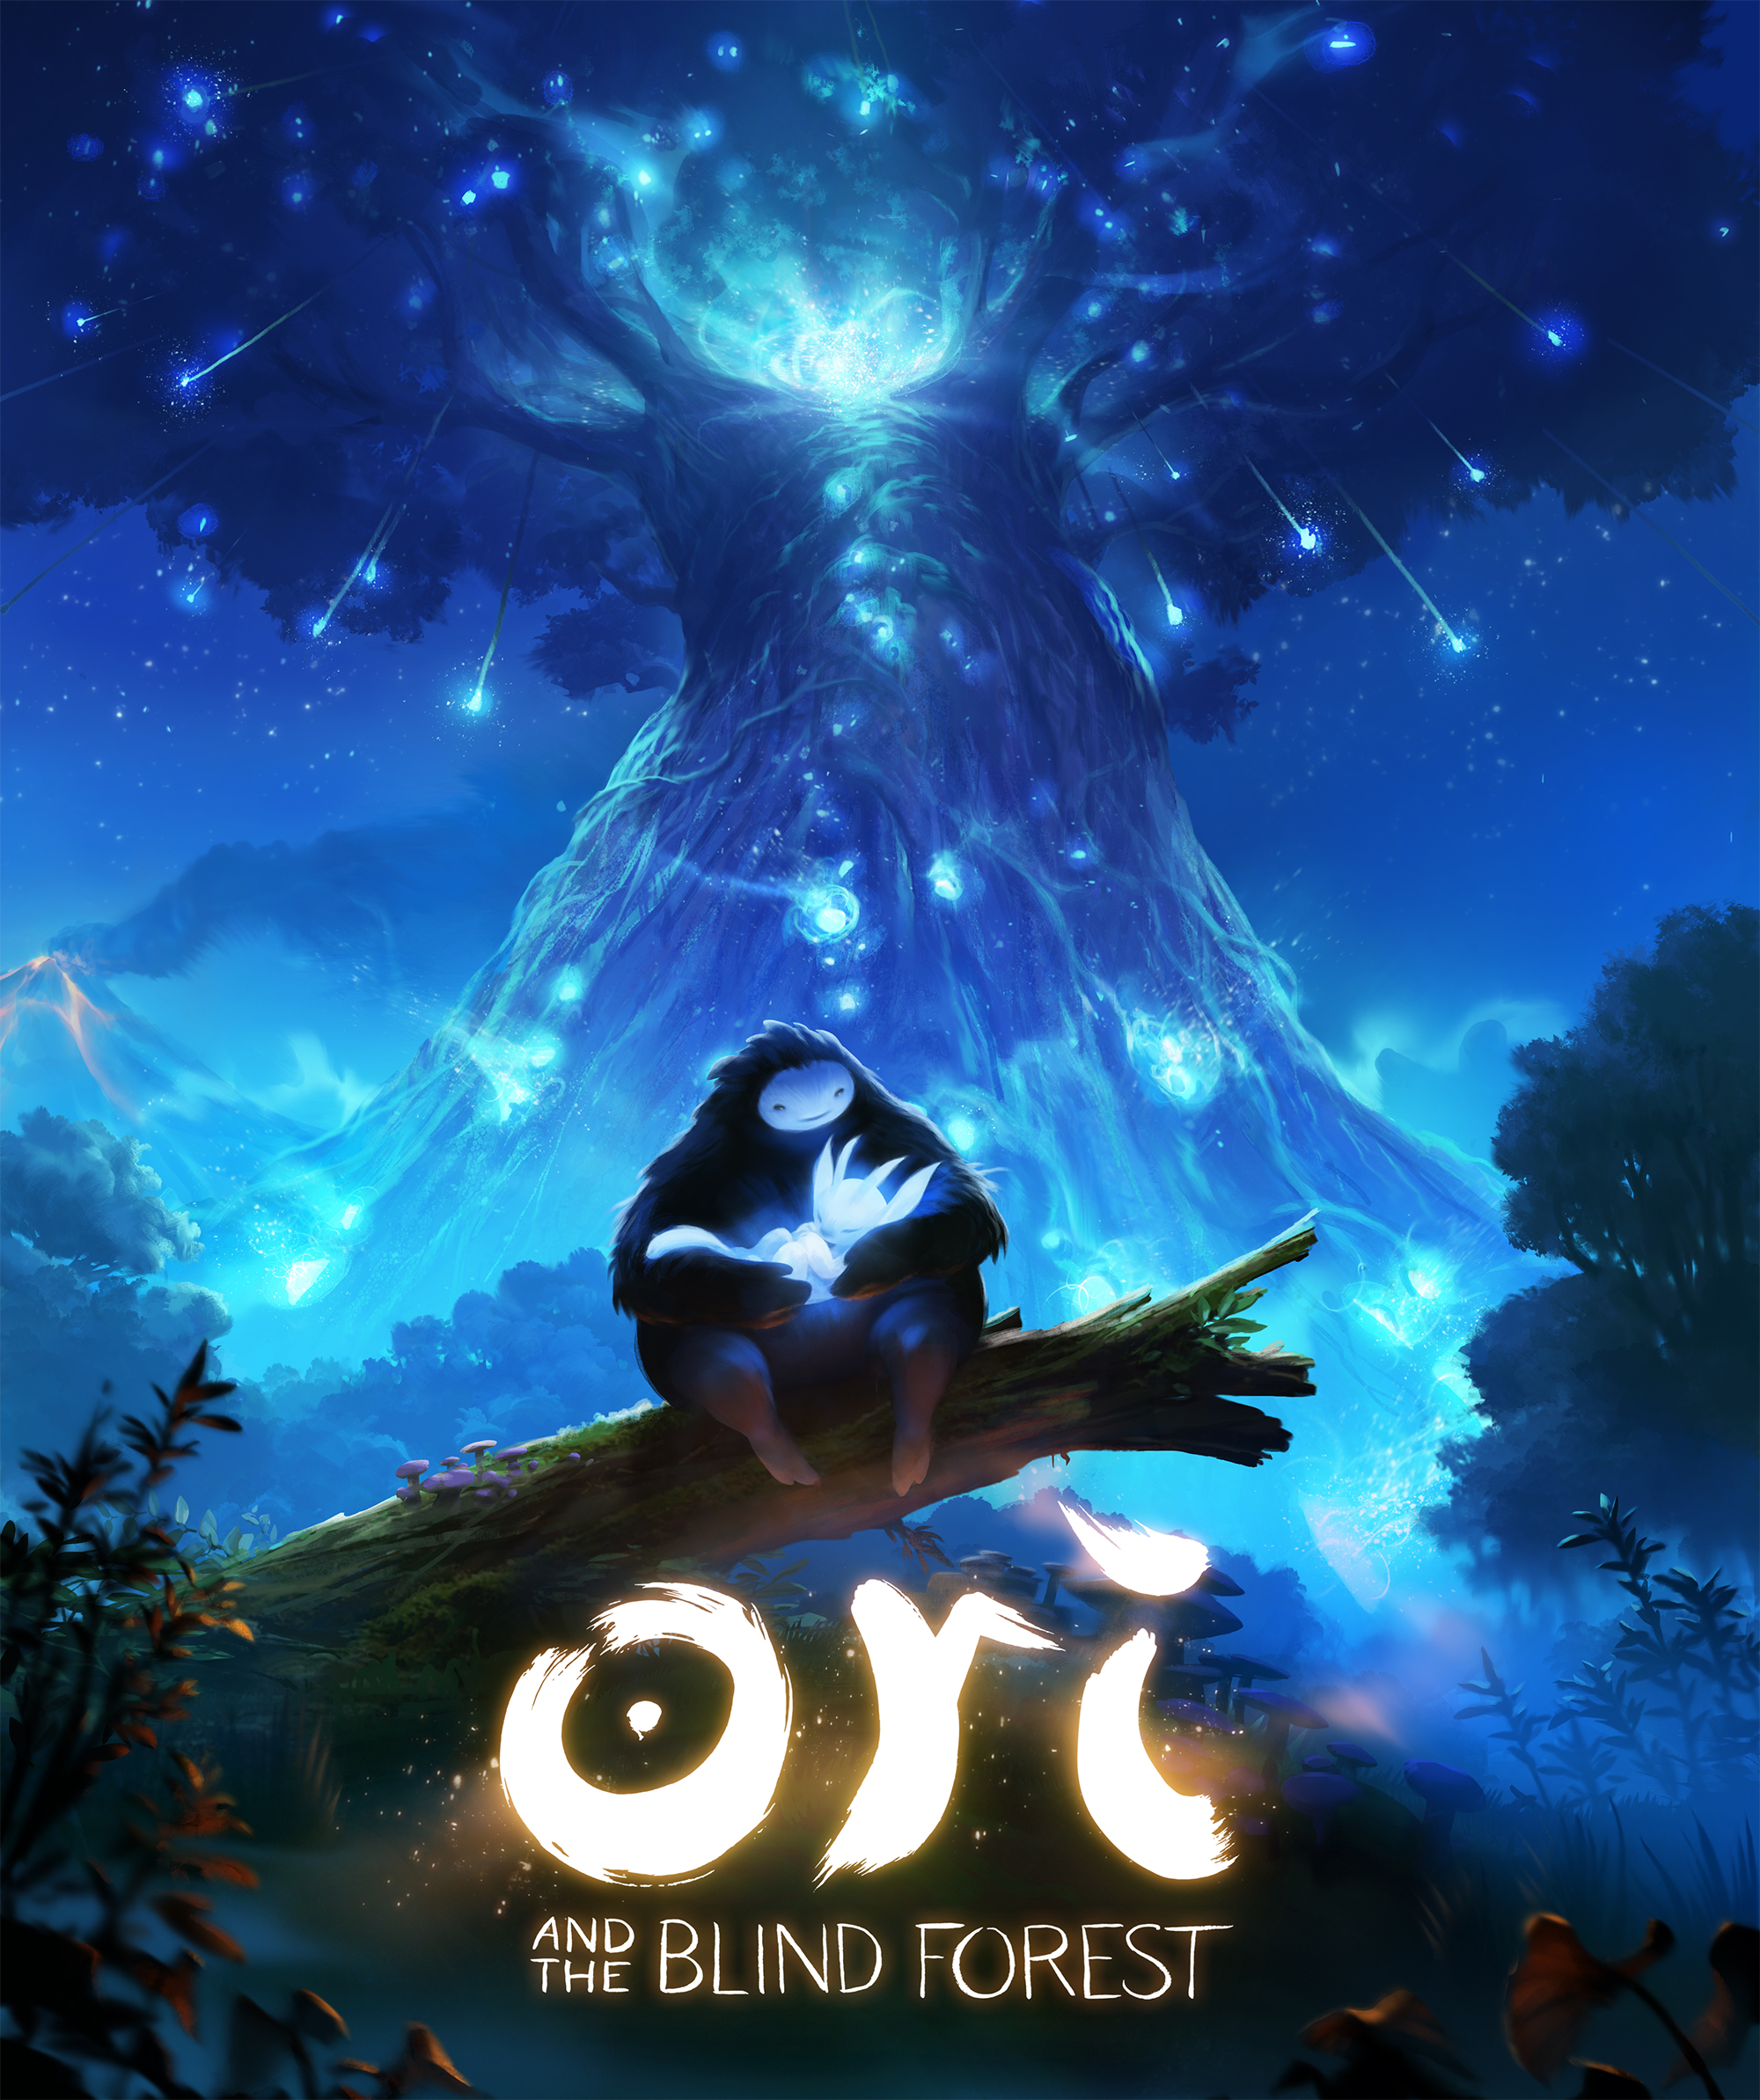 Naru, ein großes felliges Wesen sitzt auf einem Baumstumpf vor einem riesigen leuchtenden Baum und hält Ori, ein kleines, leuchtendes Wesen im Arm.